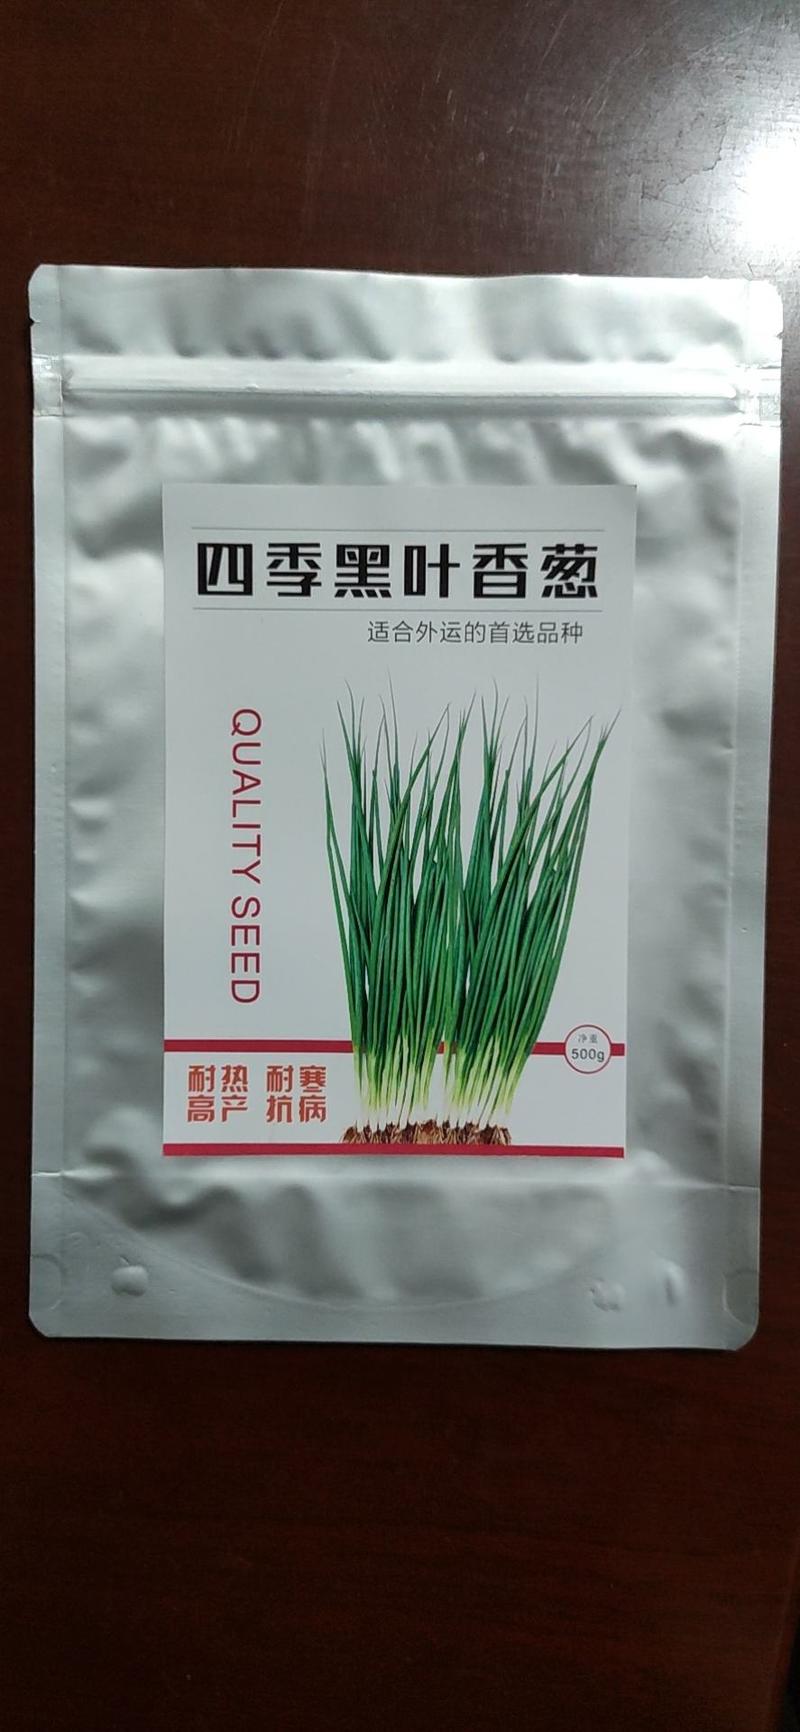 四季种植小葱铁杆黑叶金刚香葱日本引进品种繁育